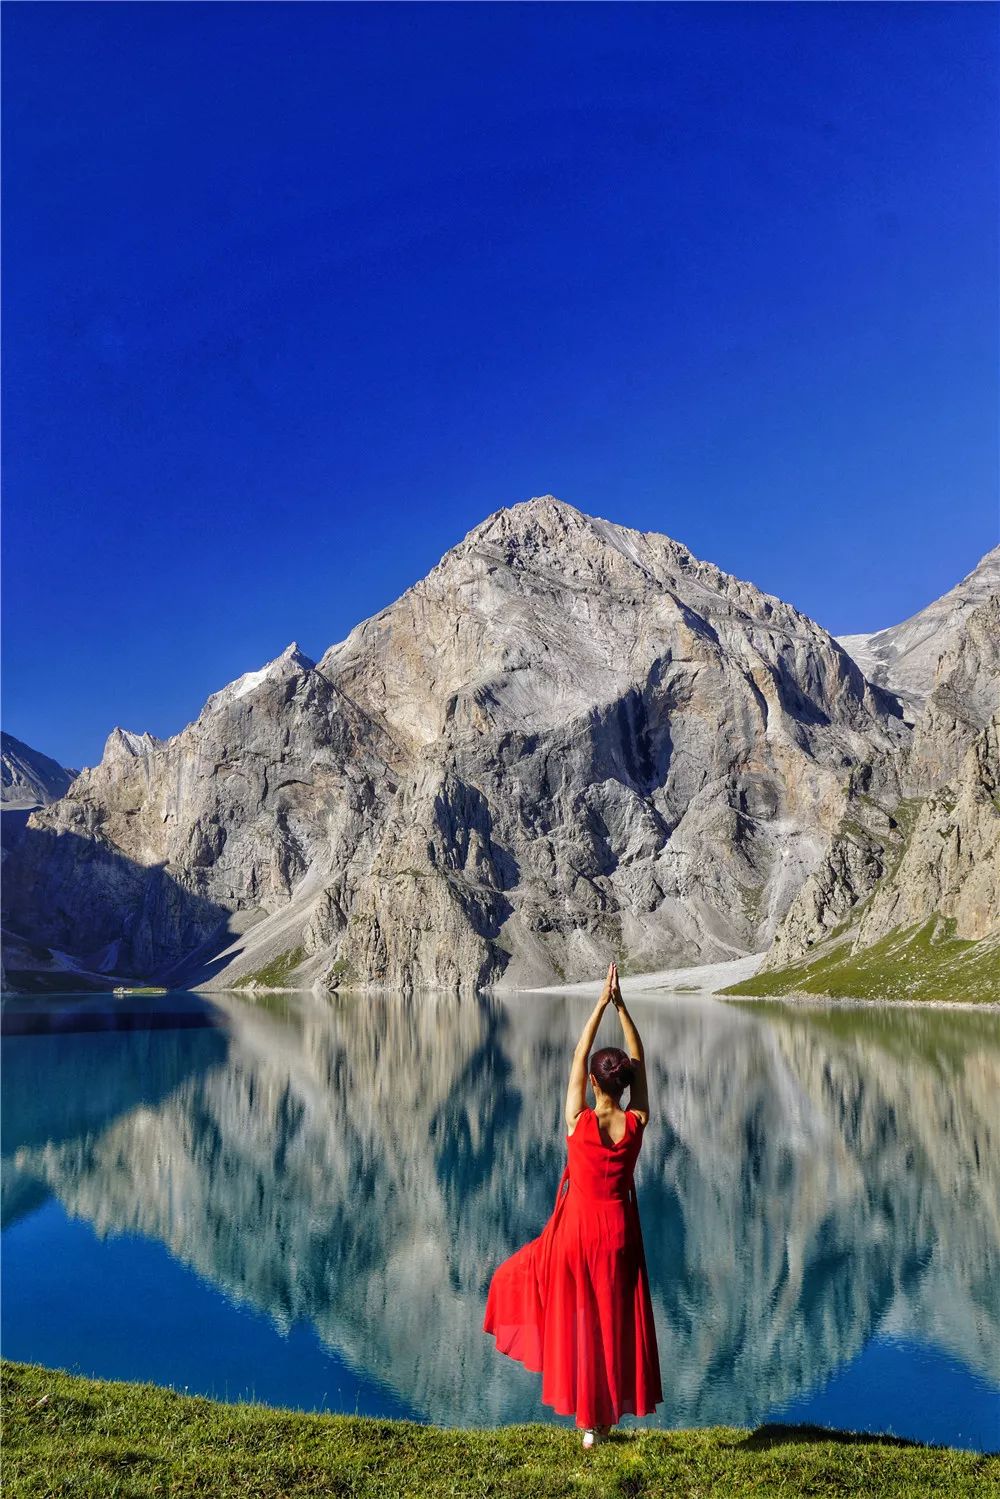 烏孫古道，為何被評為新疆最美徒步路線？ 旅遊 第3張